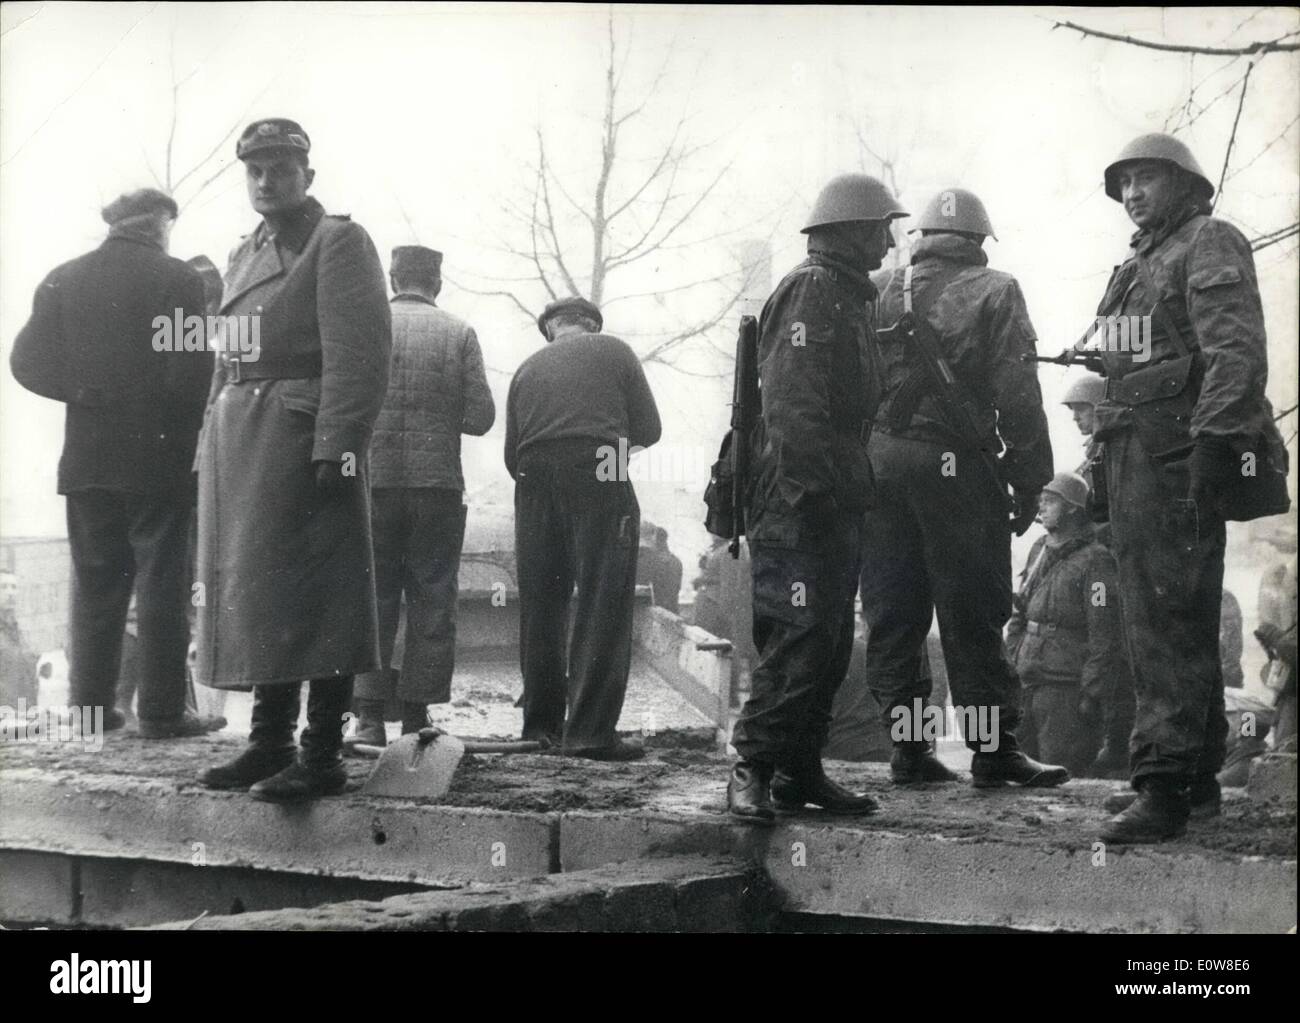 Nov 11, 1961 - Nuevo welle,c blonk andsplinte ditohes en Berlín ops : soldado de la wvolksarmee''viendo civiles de los trabajadores de Berlín oriental que debe construir el nuevo muro de concierto. En el fondo los trabajadores civiles. Foto de stock